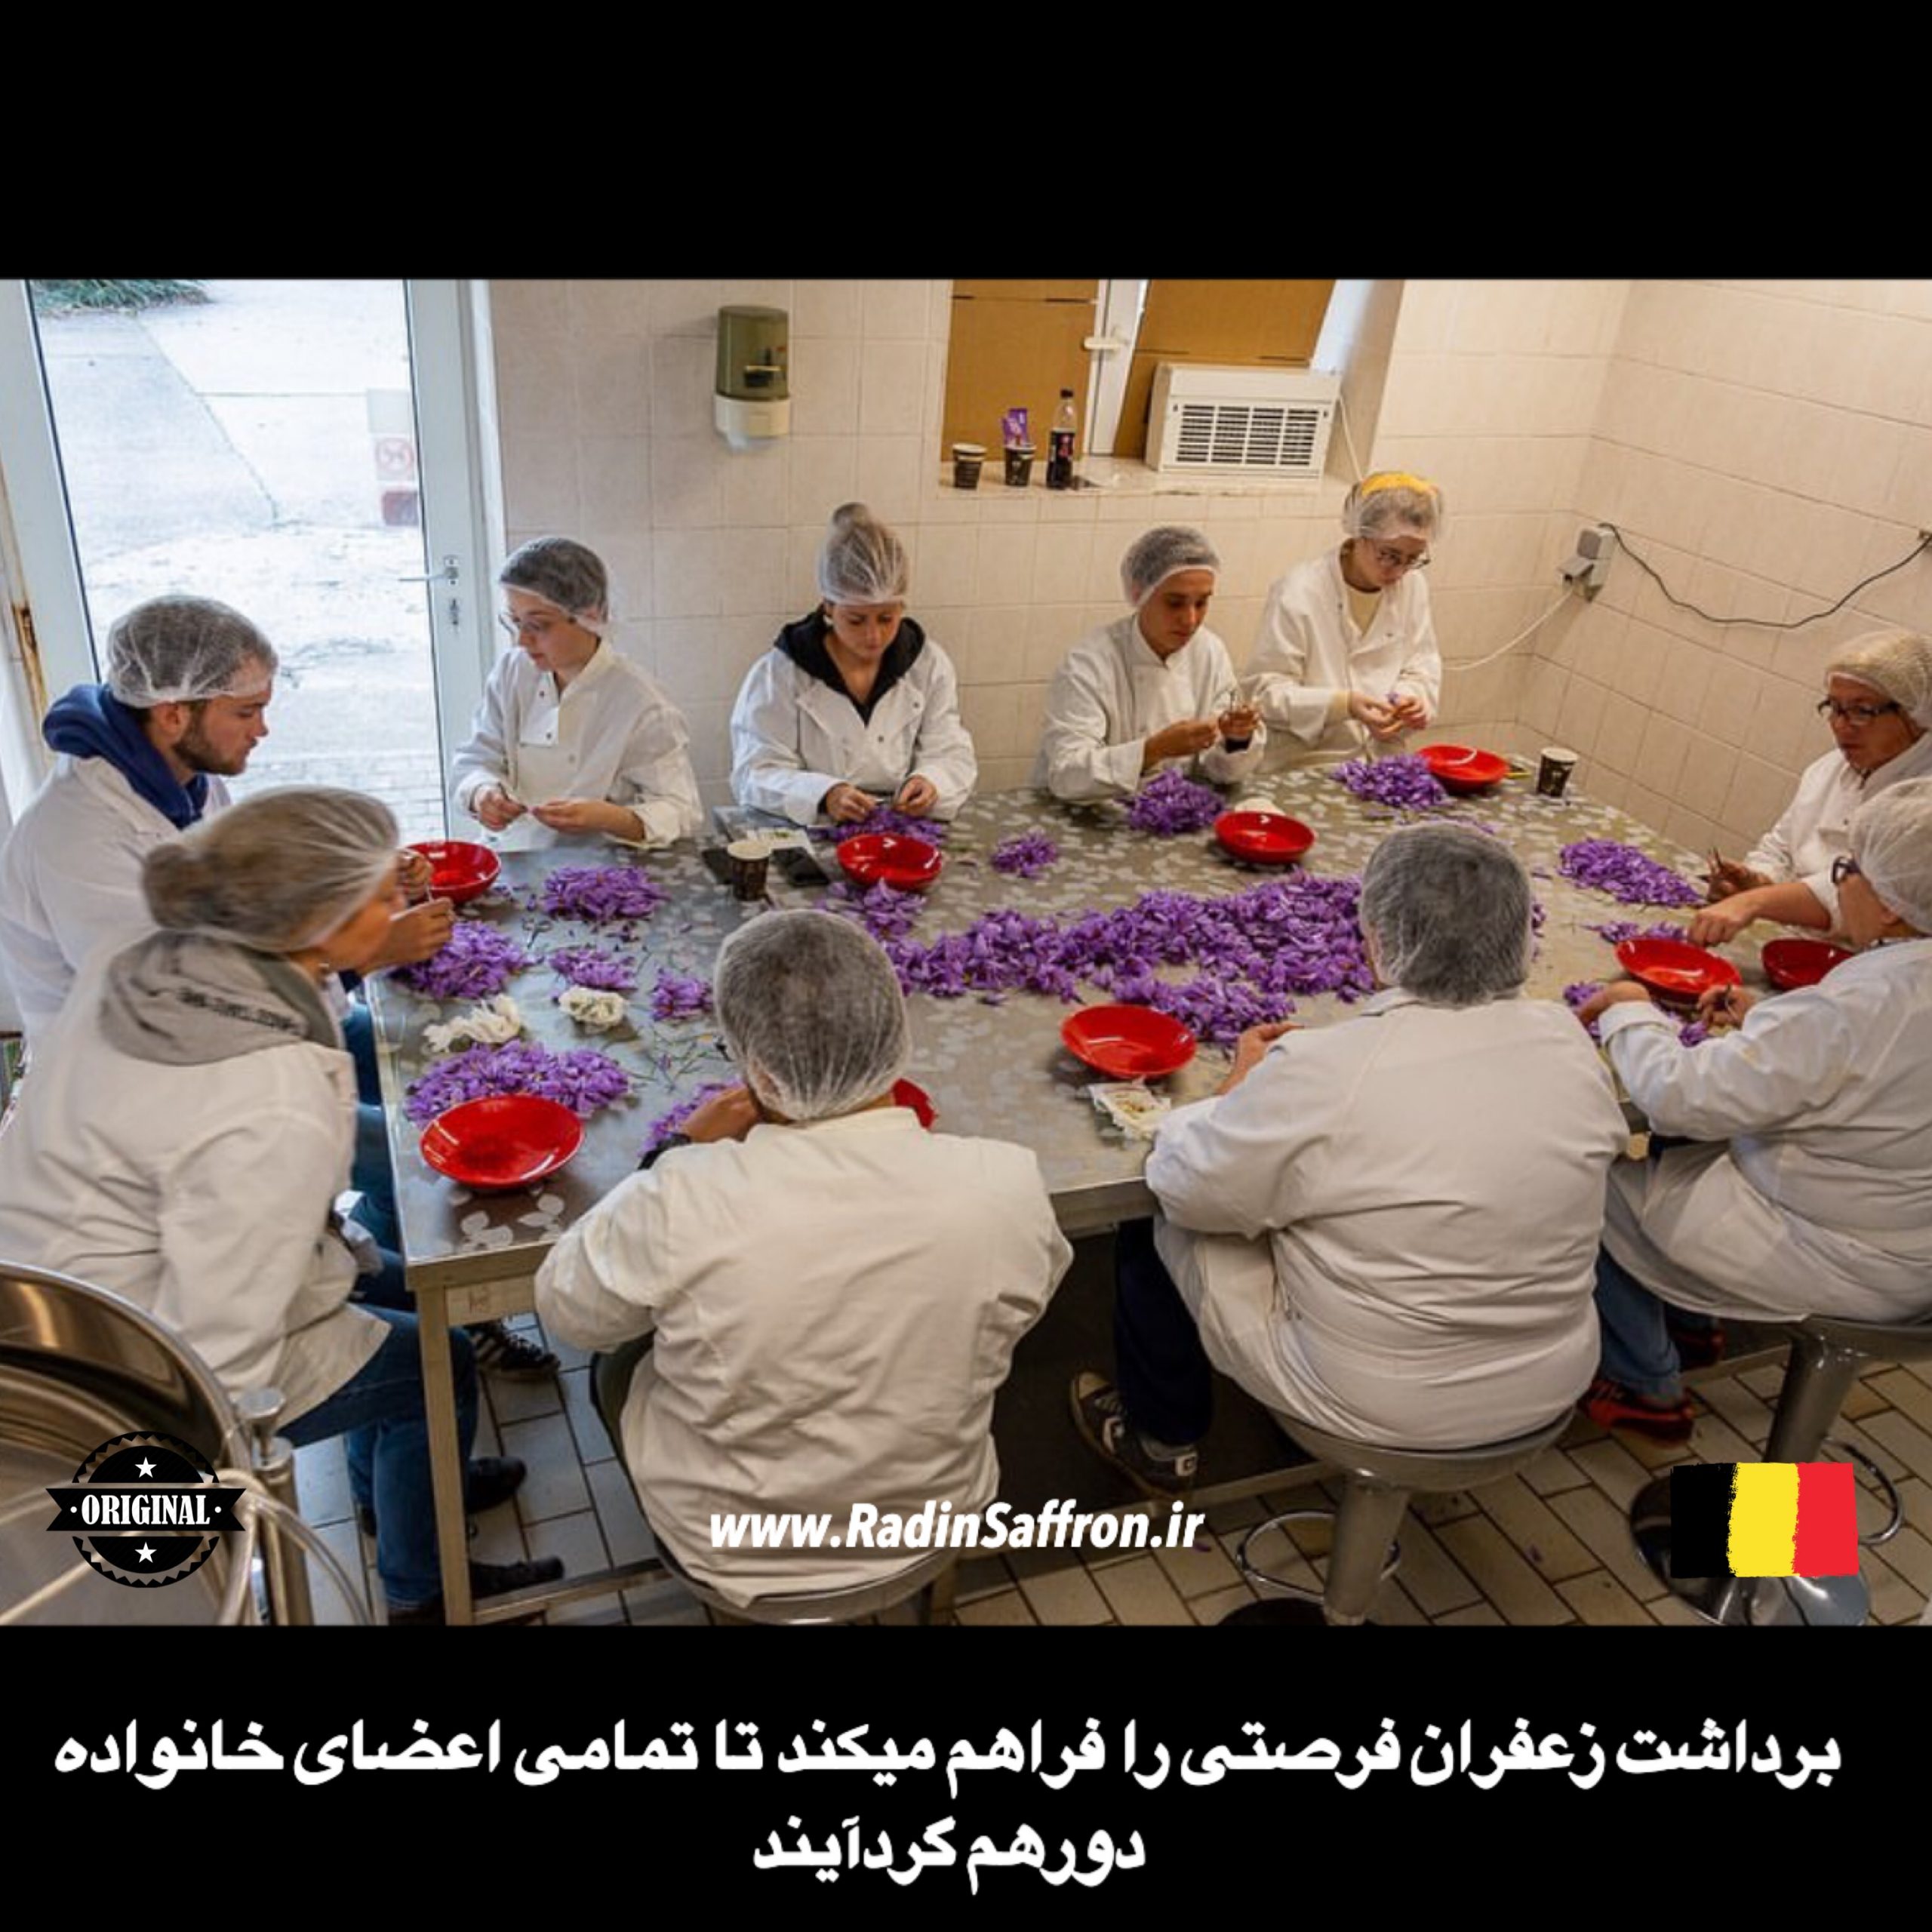 فرآوری گل زعفران در کشور بلژیک